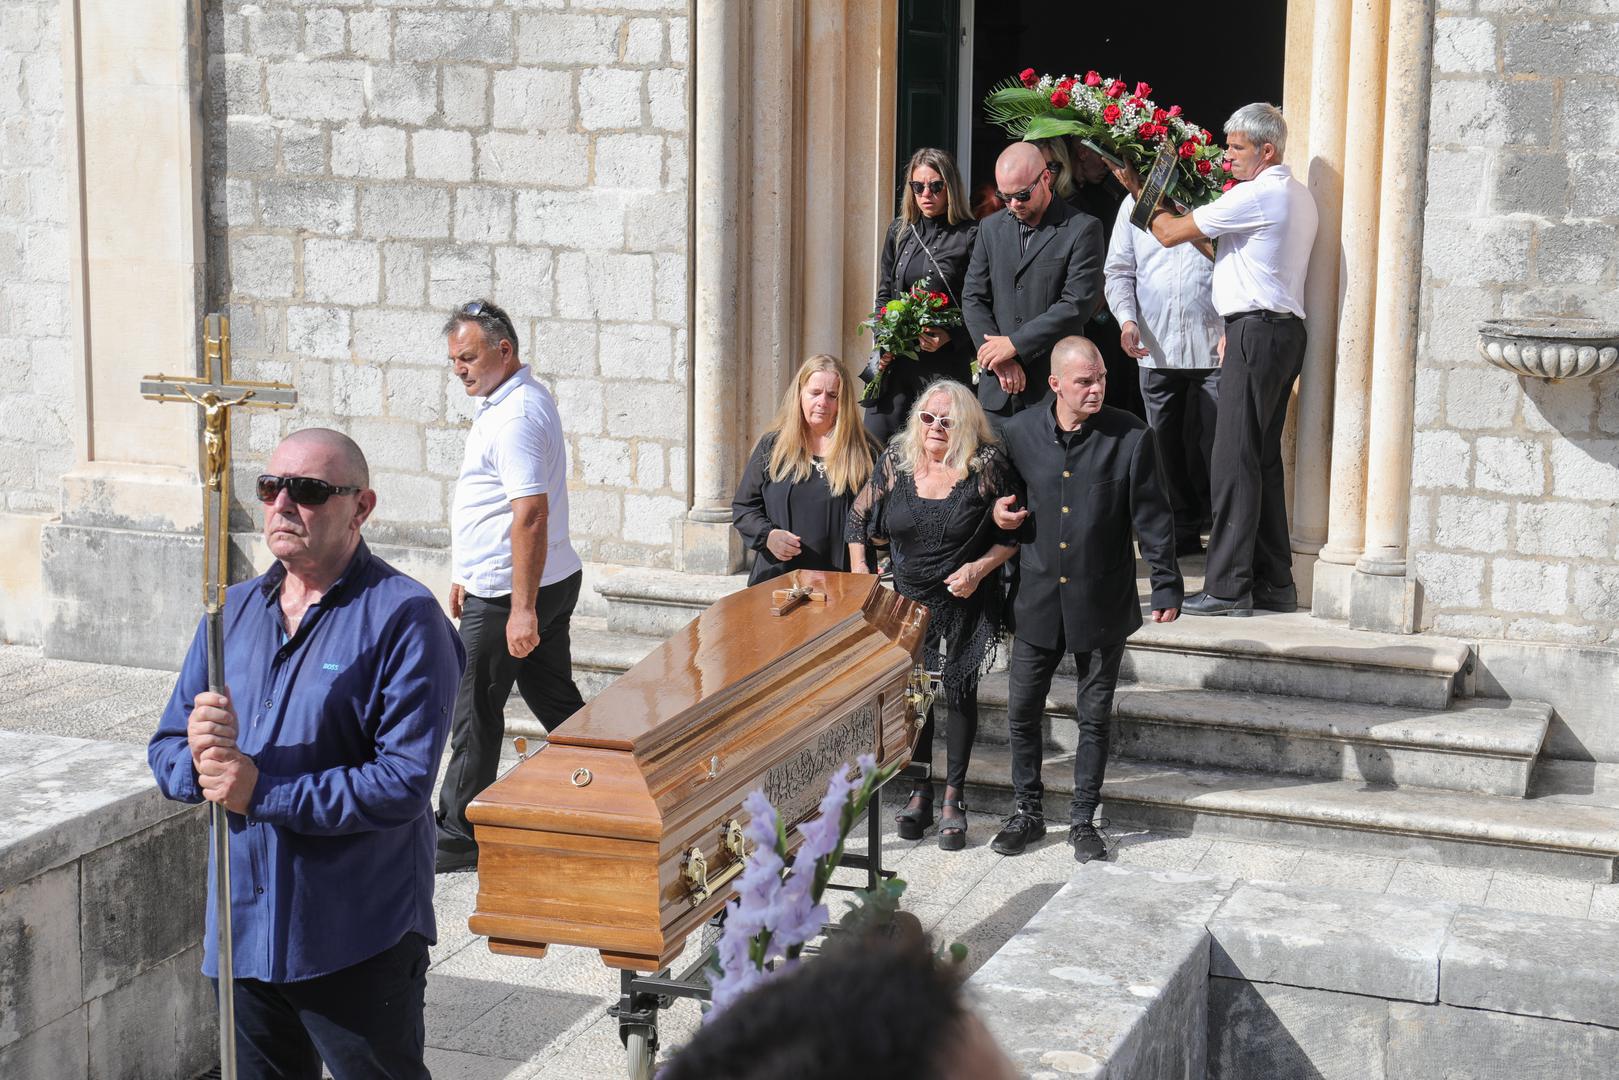 Osamdesetih prošlog stoljeća bio je jedan od najpopularnijih dalmatinskih pjevača, redovito je rasprodavao koncerte i čak tri puta pobijedio na Splitskom festivalu. Prodao je više od milijun ploča i snimio 20 albuma. Dubrovčani su ga s Terezom Kesovijom 2004. godine proglasili pjevačem stoljeća grada Dubrovnika. 
